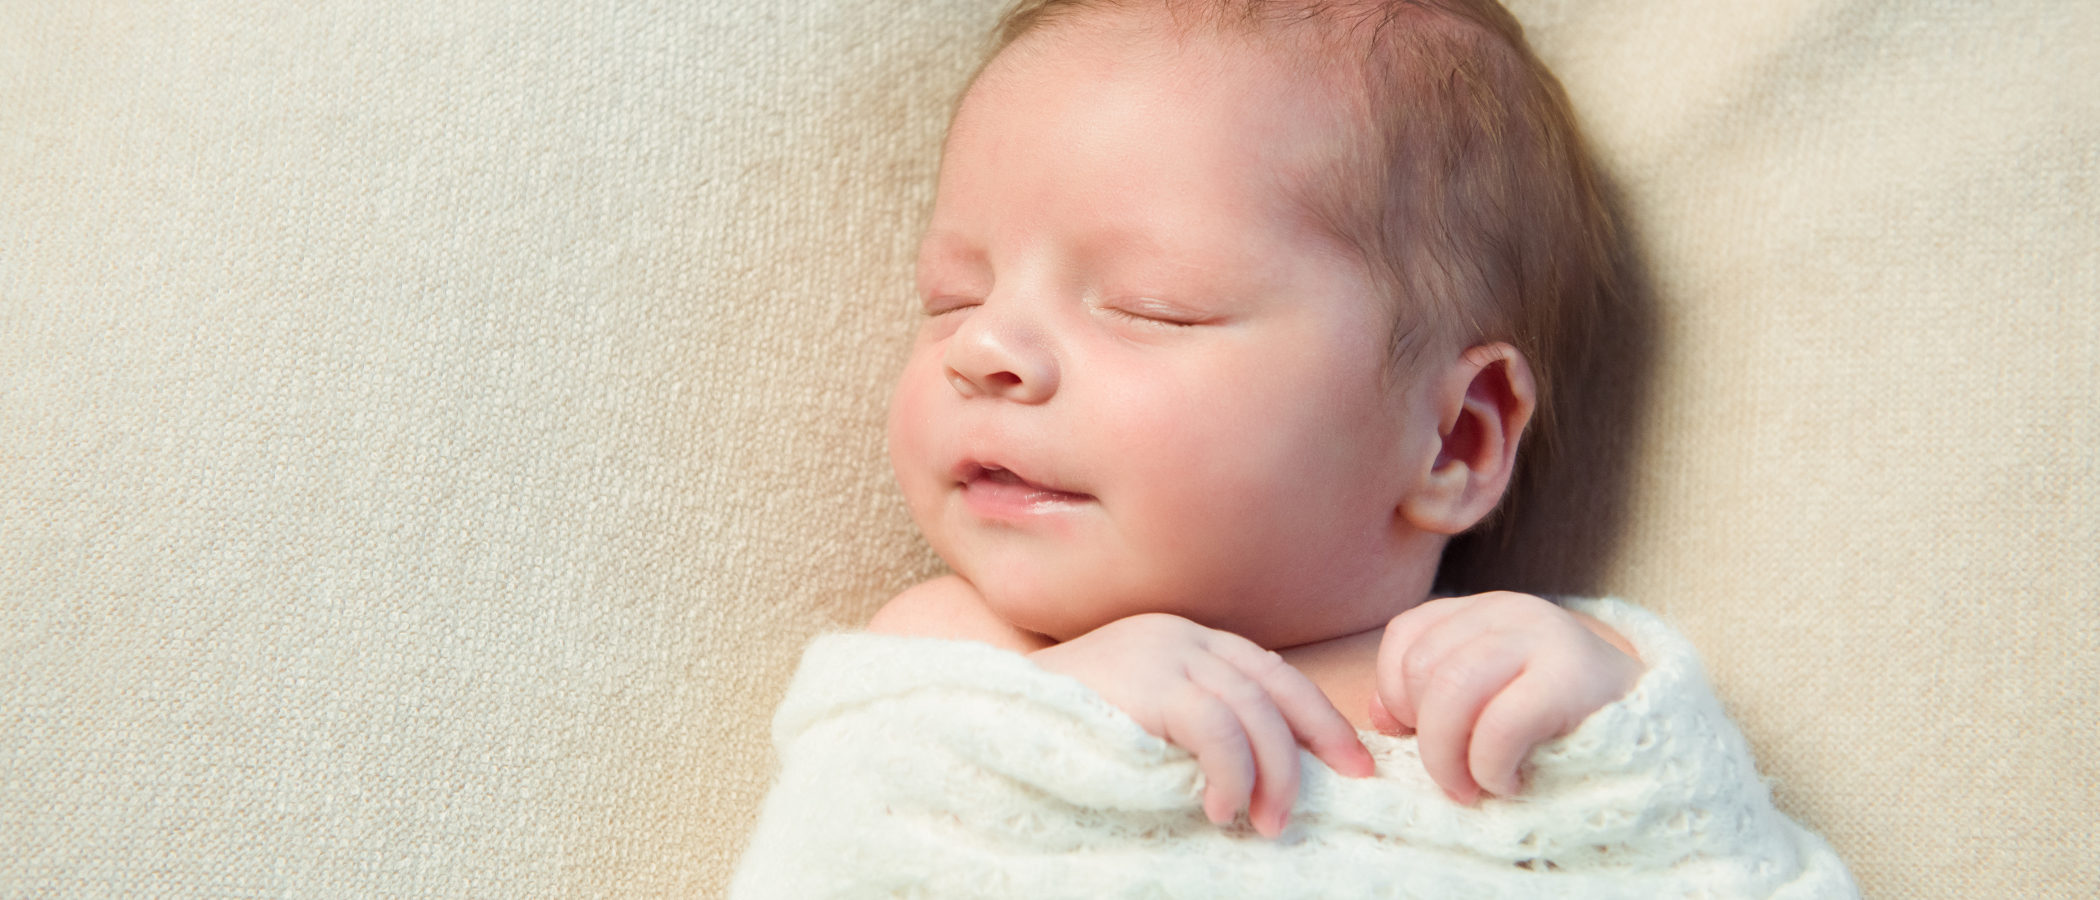 Síndrome de la cabeza plana en bebés recién nacidos